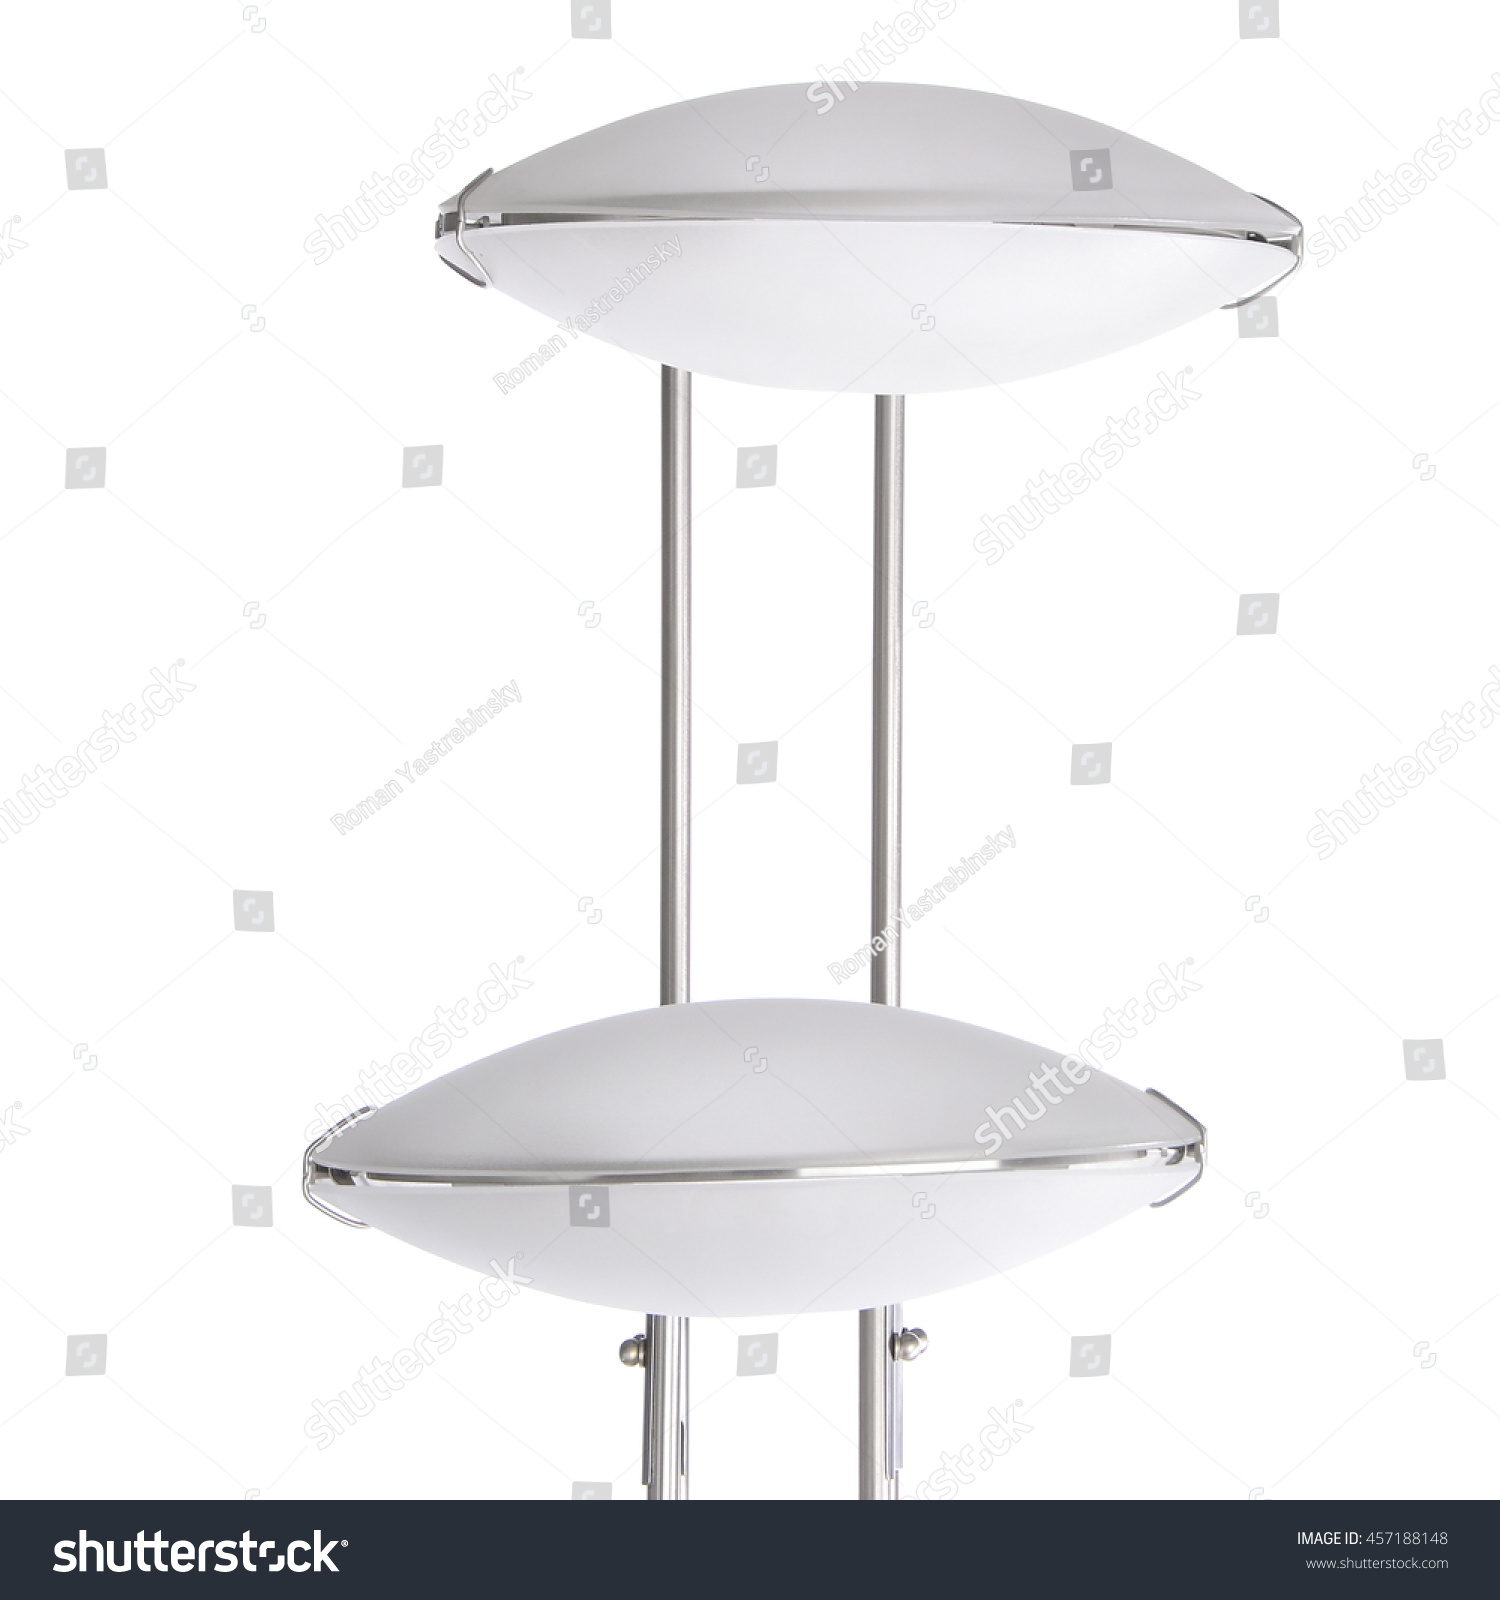 Floor Lamp Stock Photo 457188148 - Shutterstock